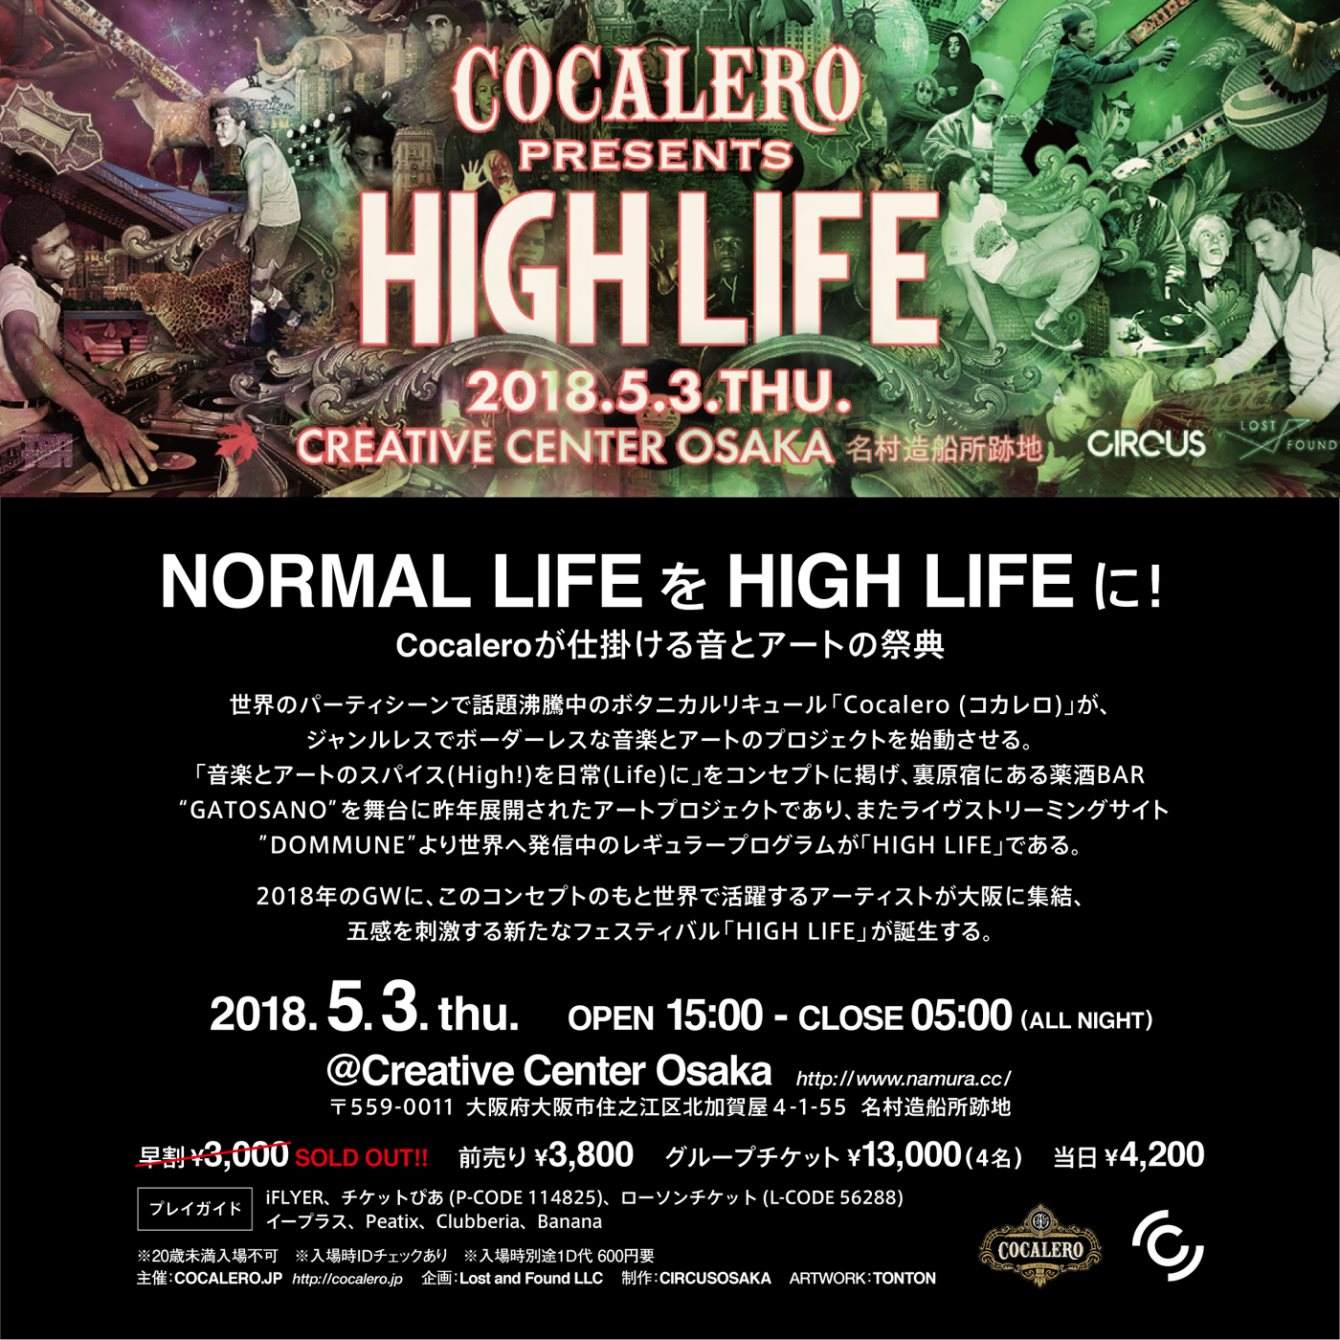 Cocalero presents High Life - フライヤー裏